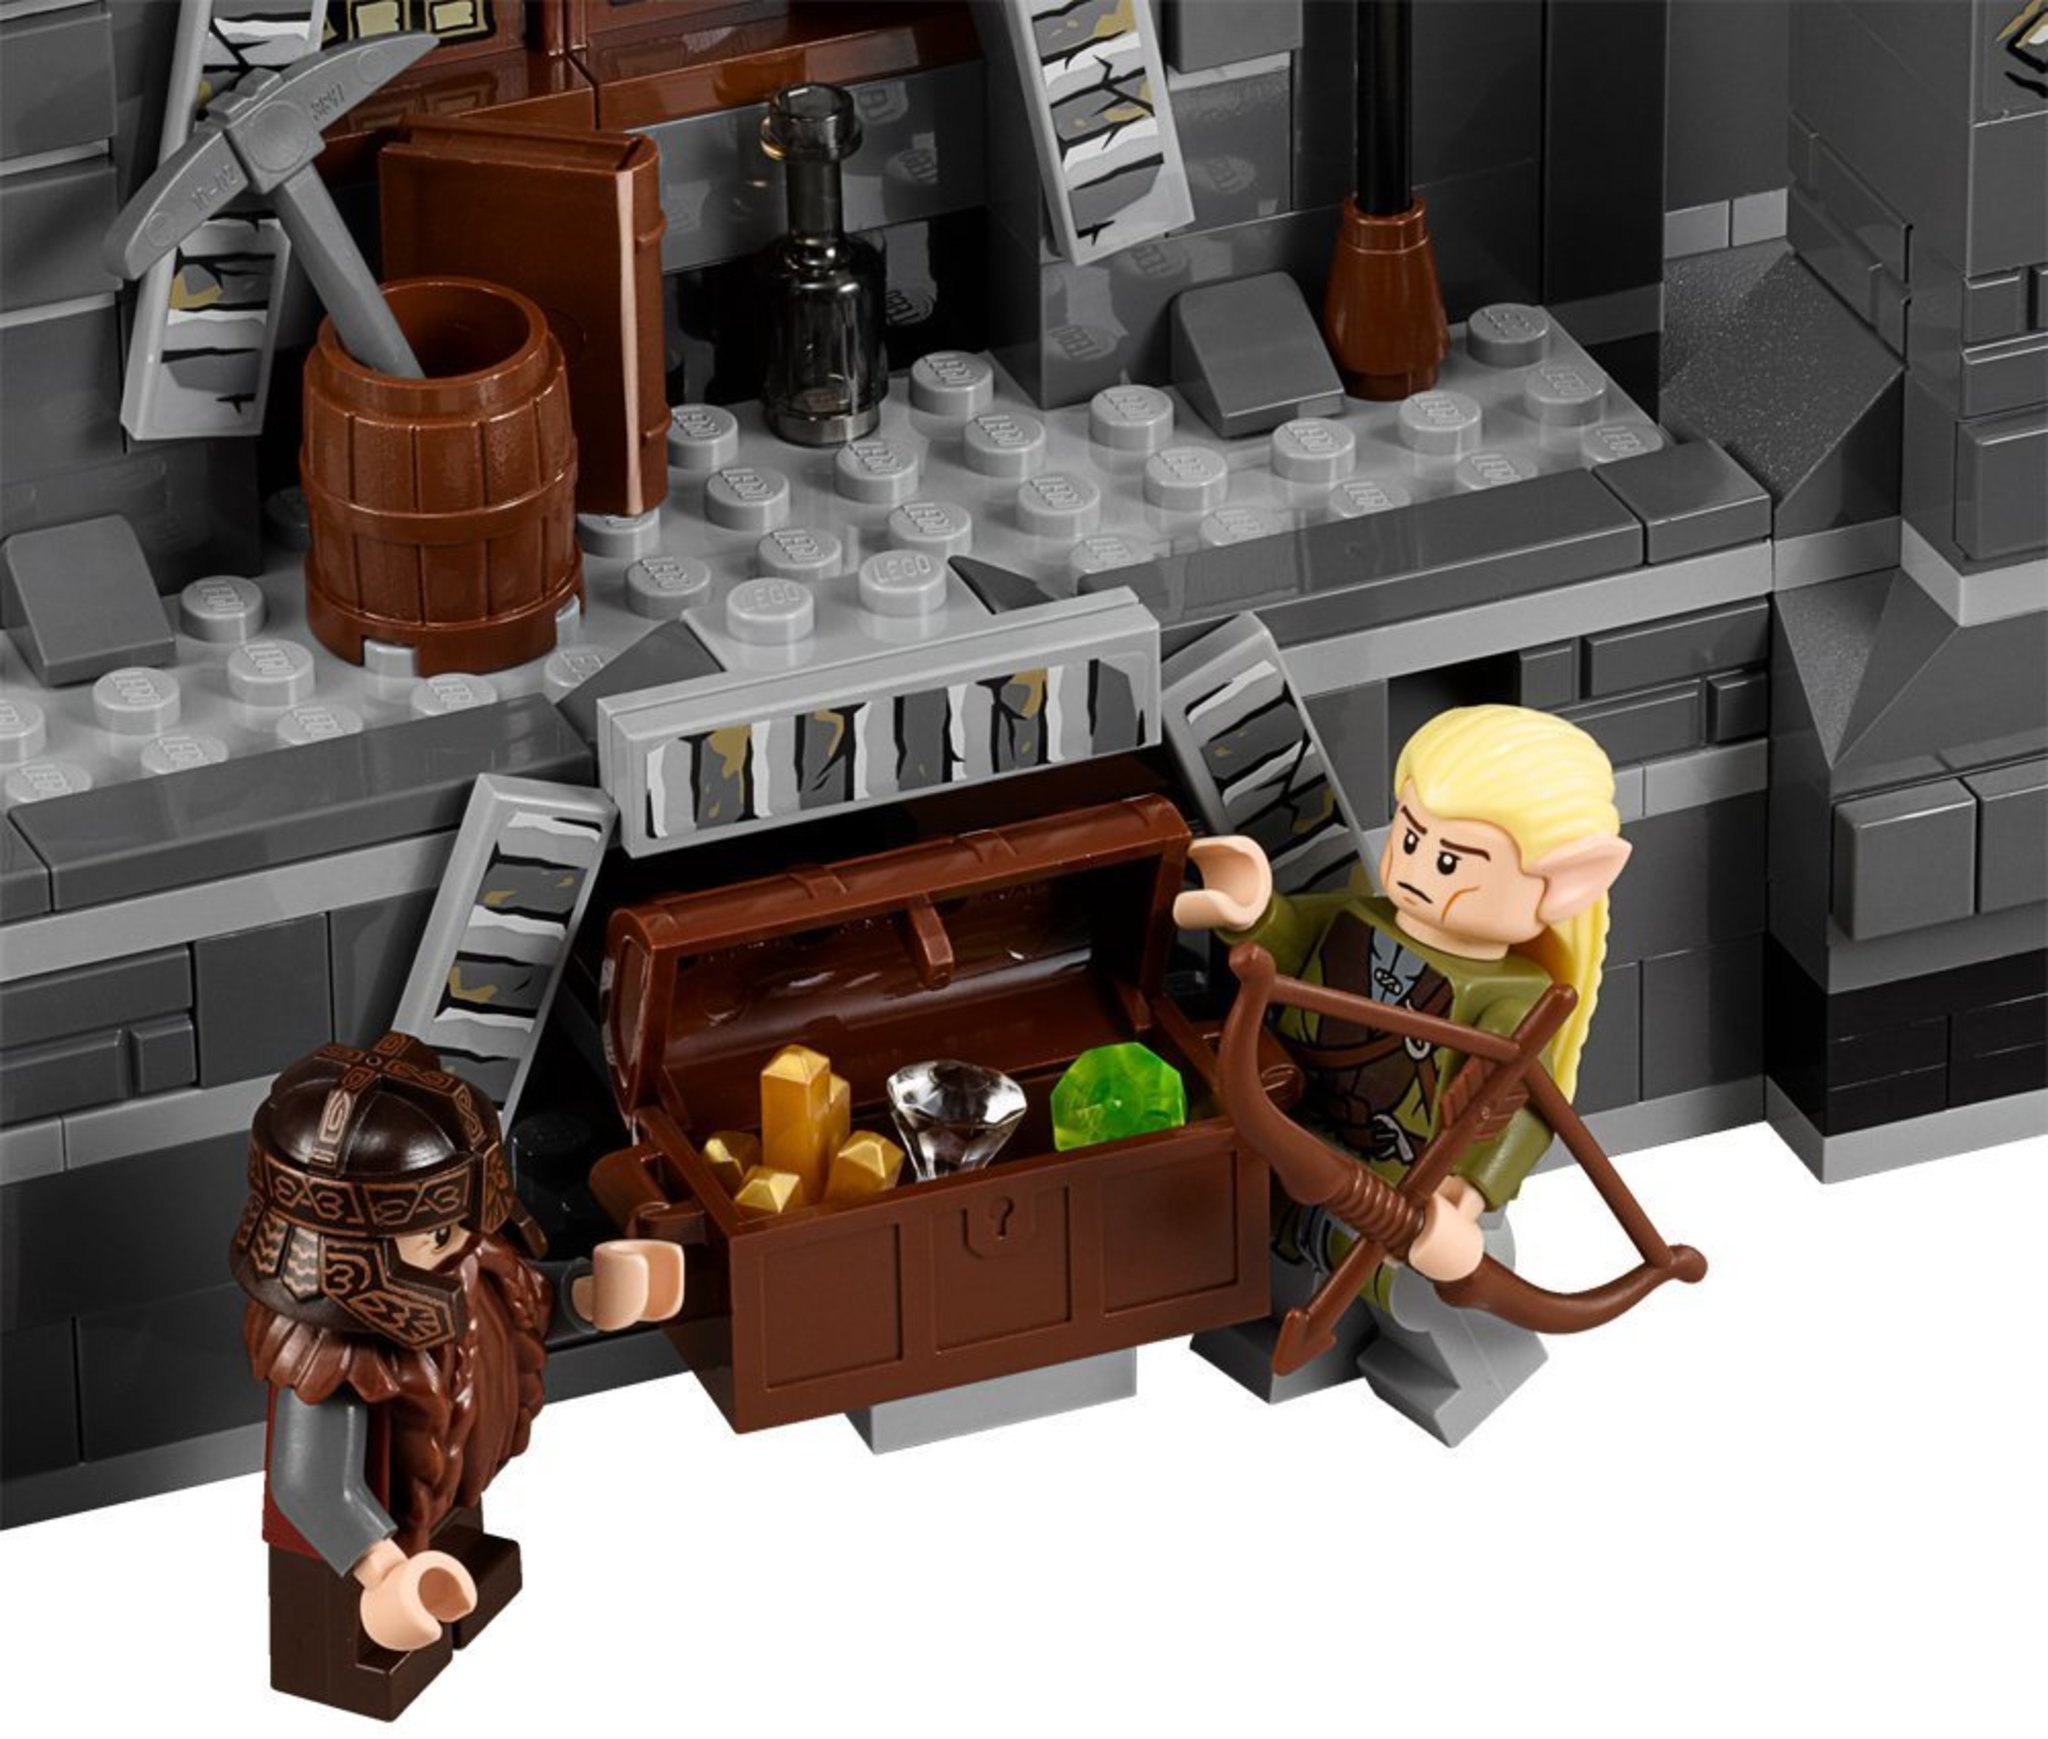 LEGO The Lord of the Rings 79005 - La Battaglia dei Maghi